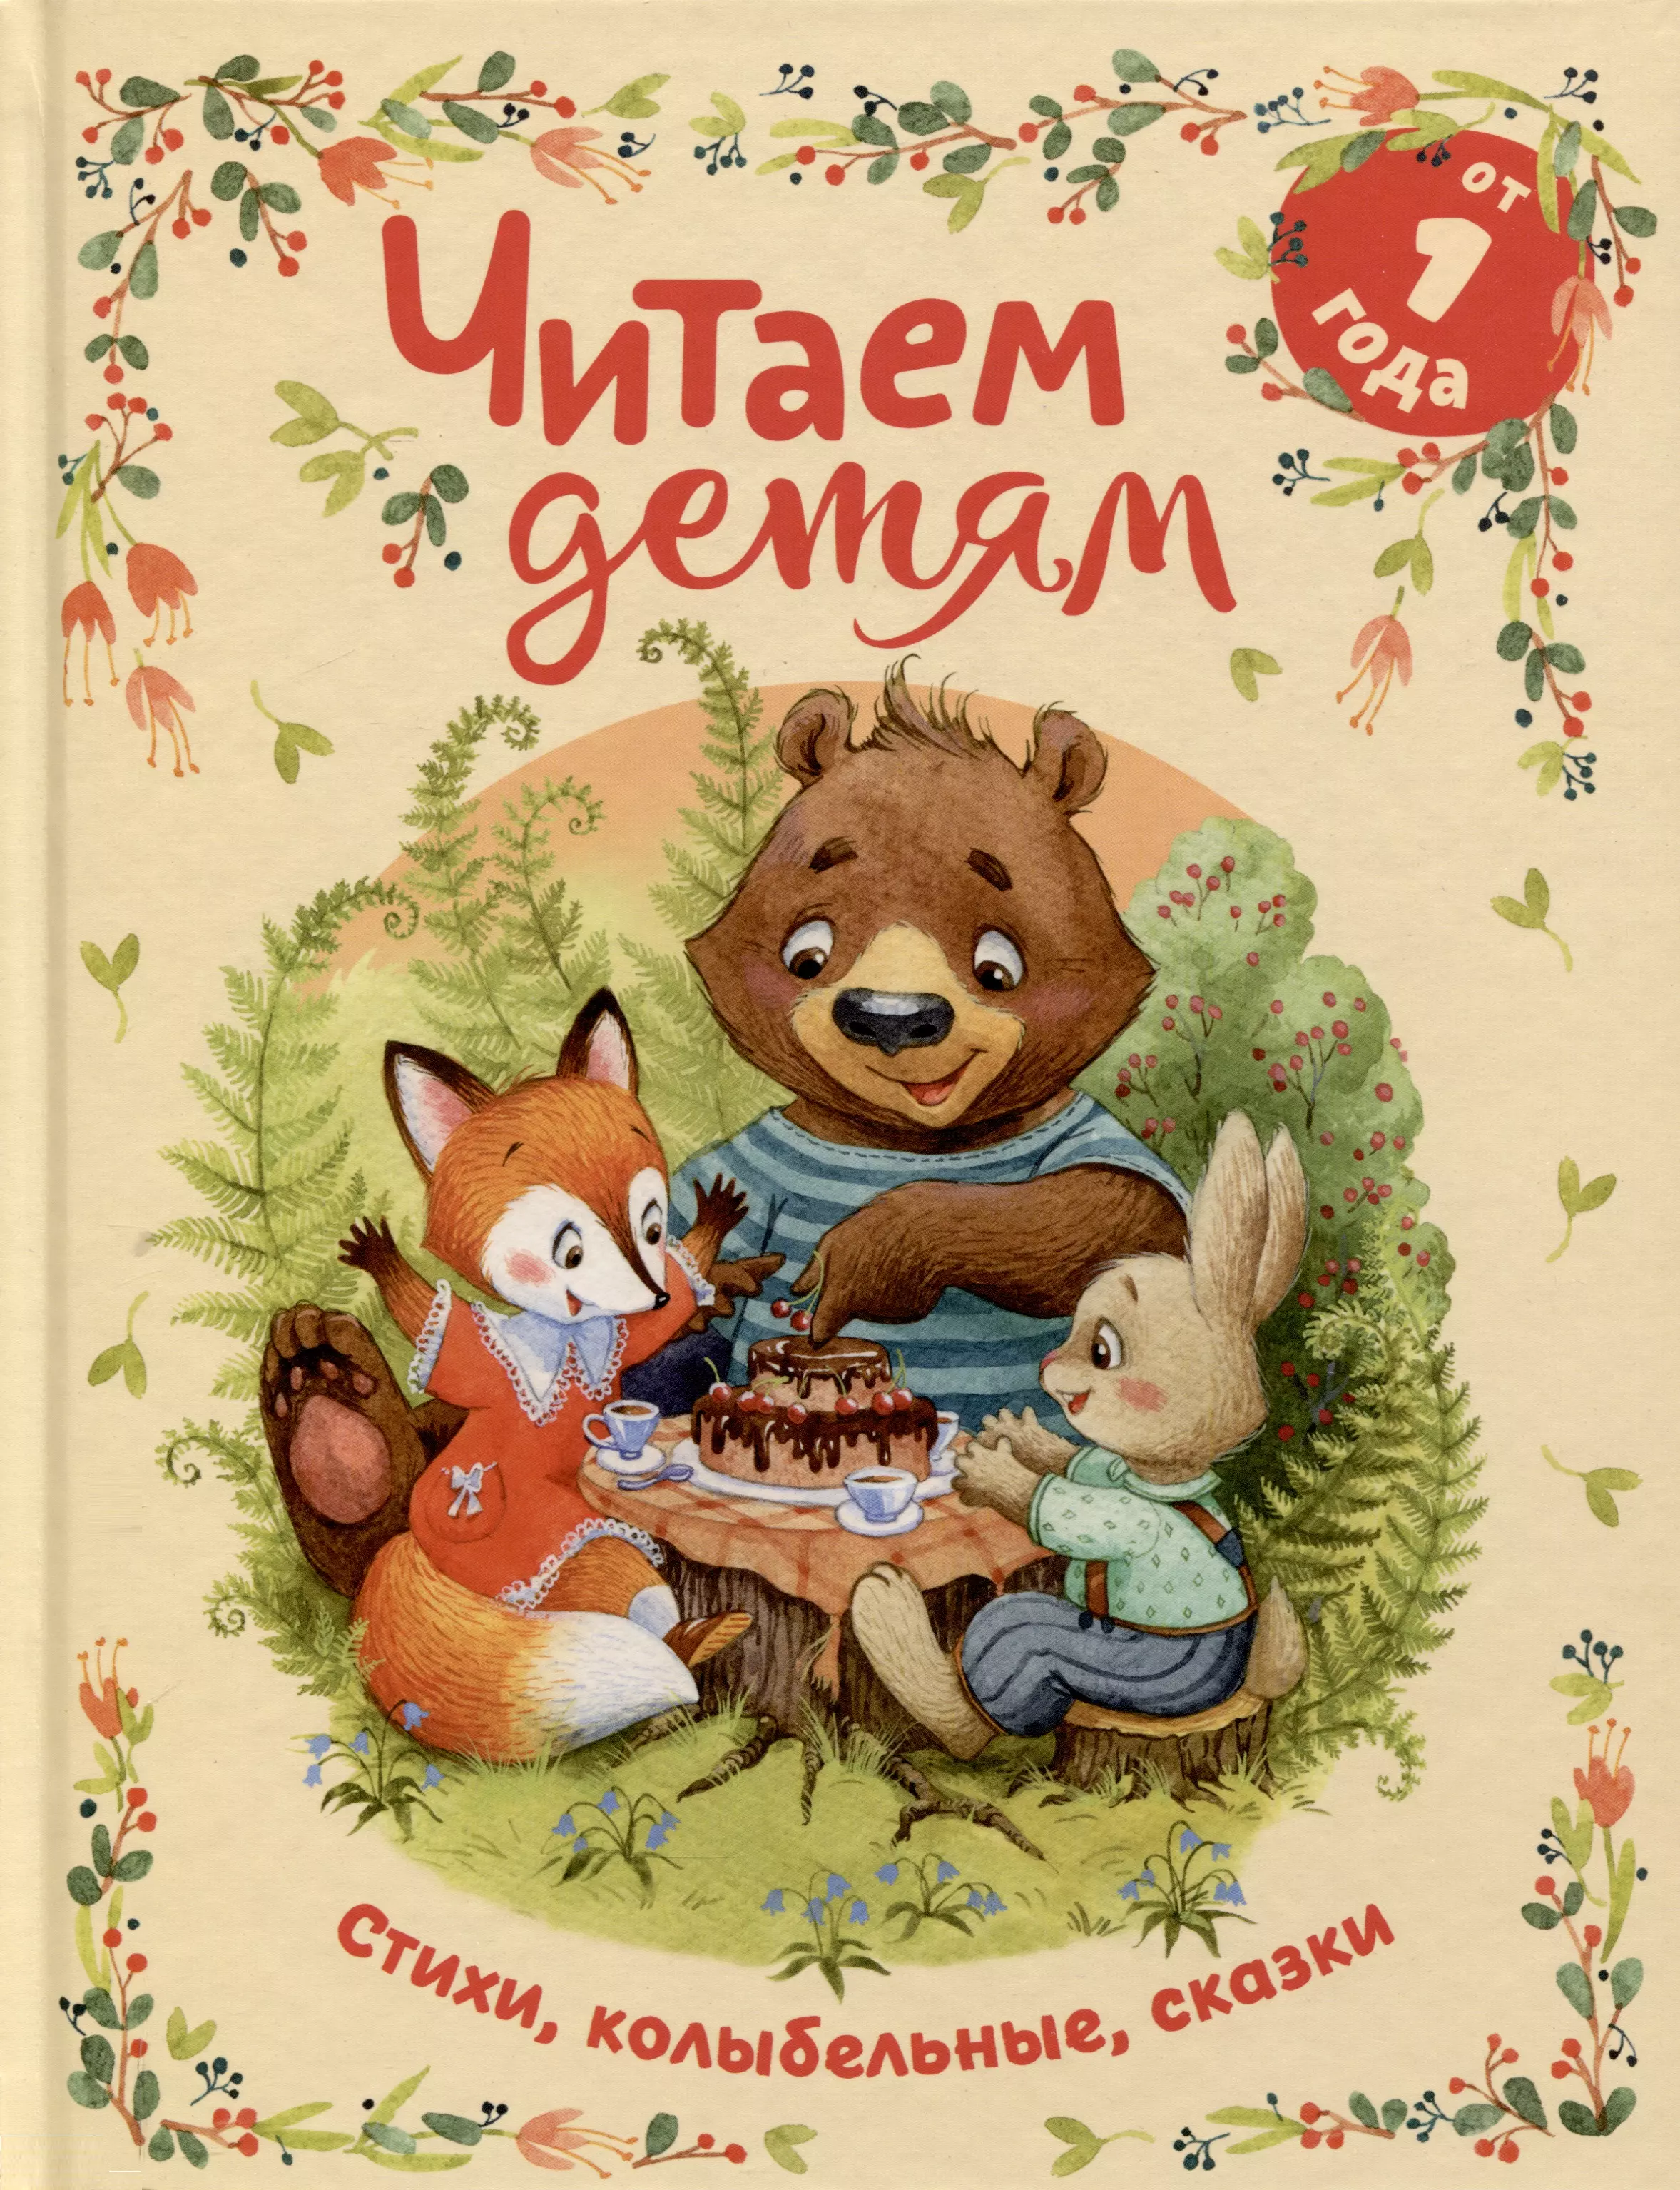 Читаем детям от 1 года. Стихи, колыбельные, сказки колобок русские народные сказки и потешки